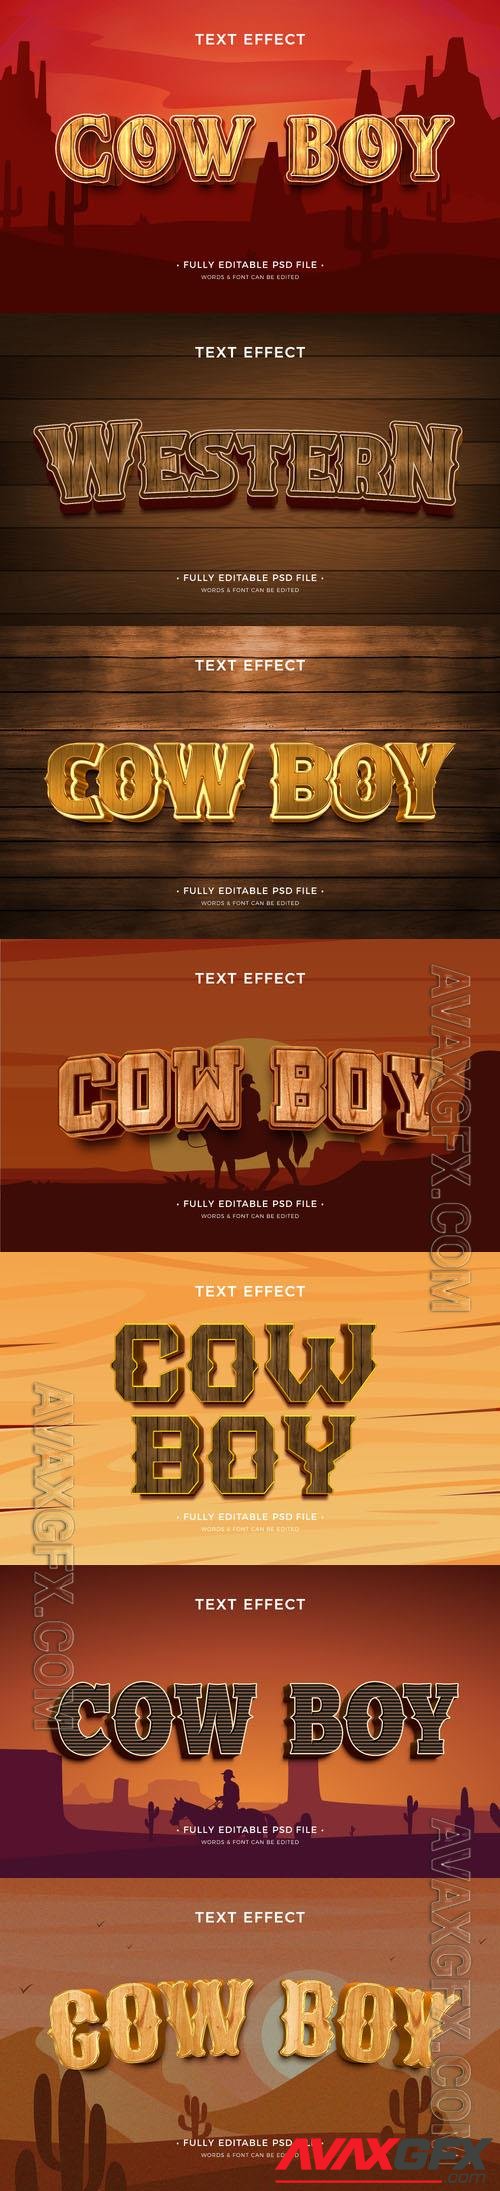 PSD cowboy text effect